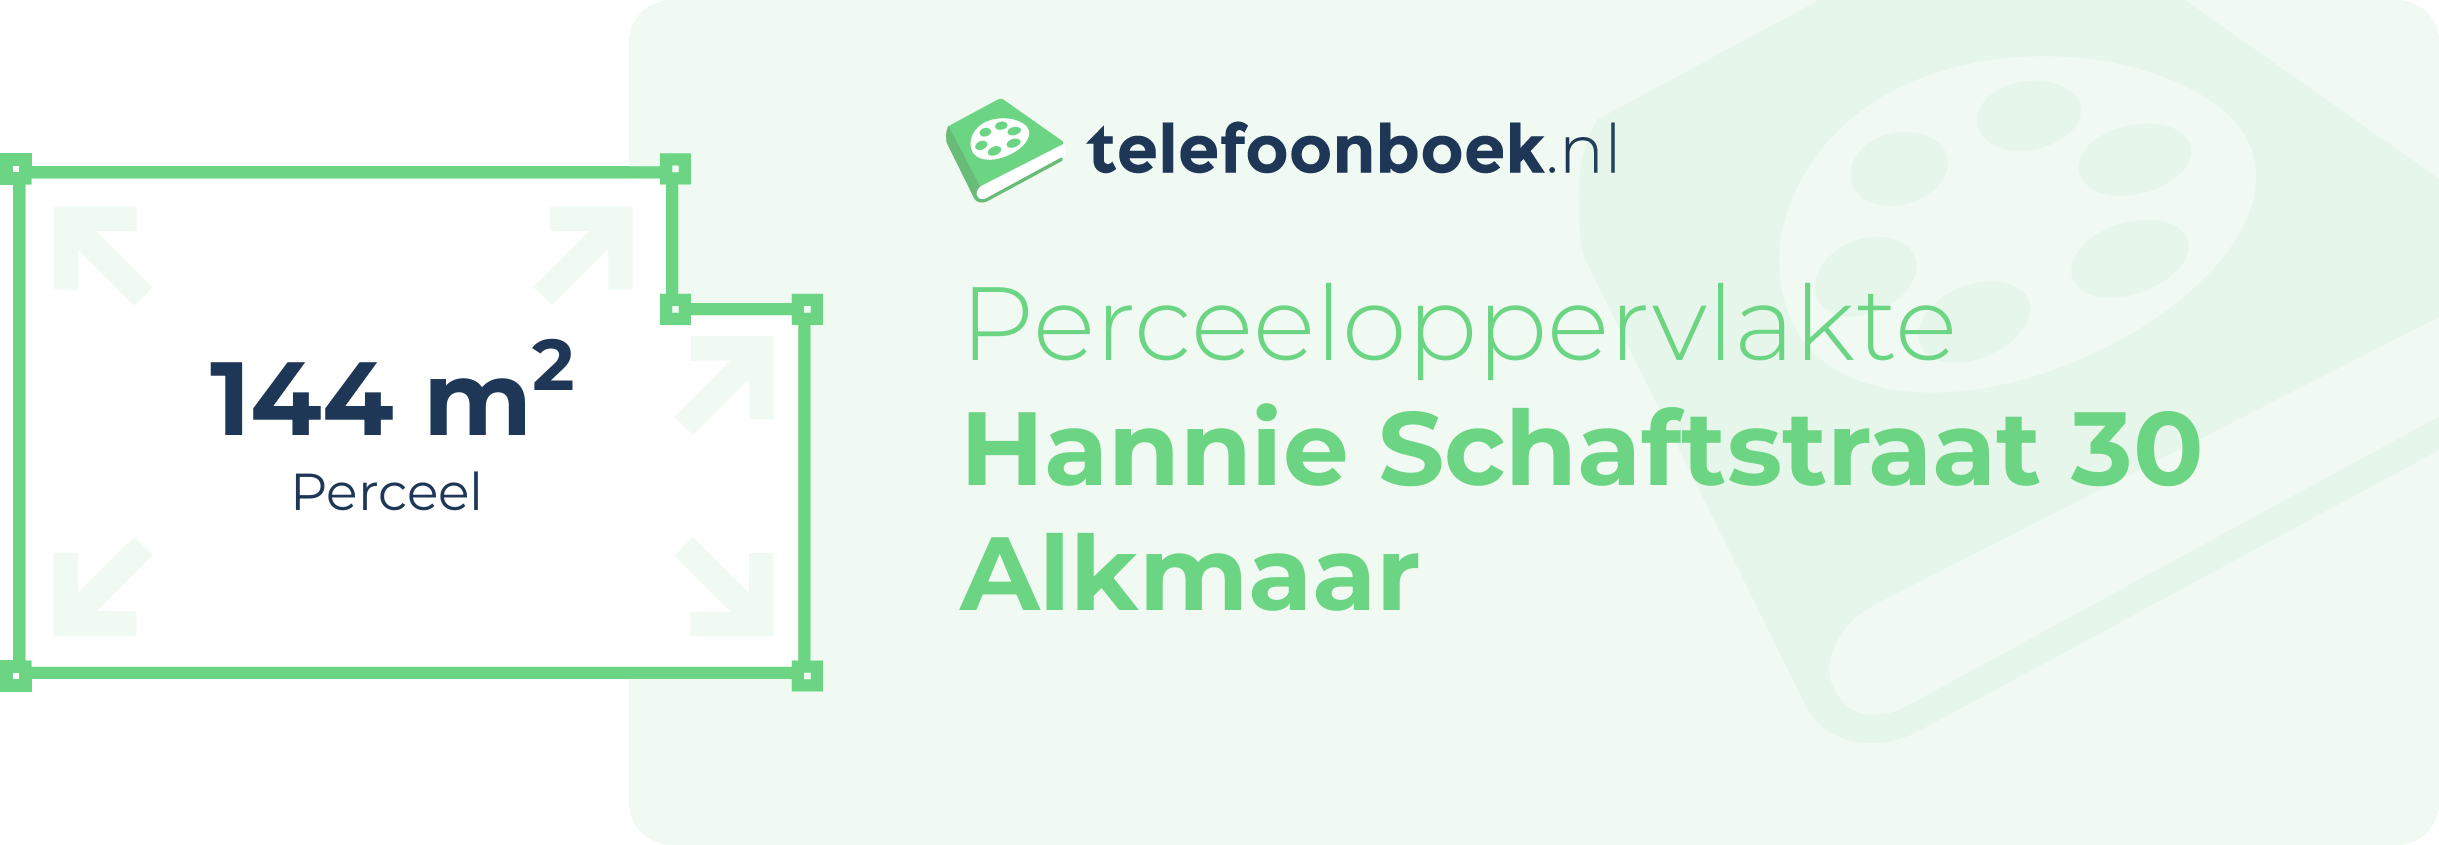 Perceeloppervlakte Hannie Schaftstraat 30 Alkmaar